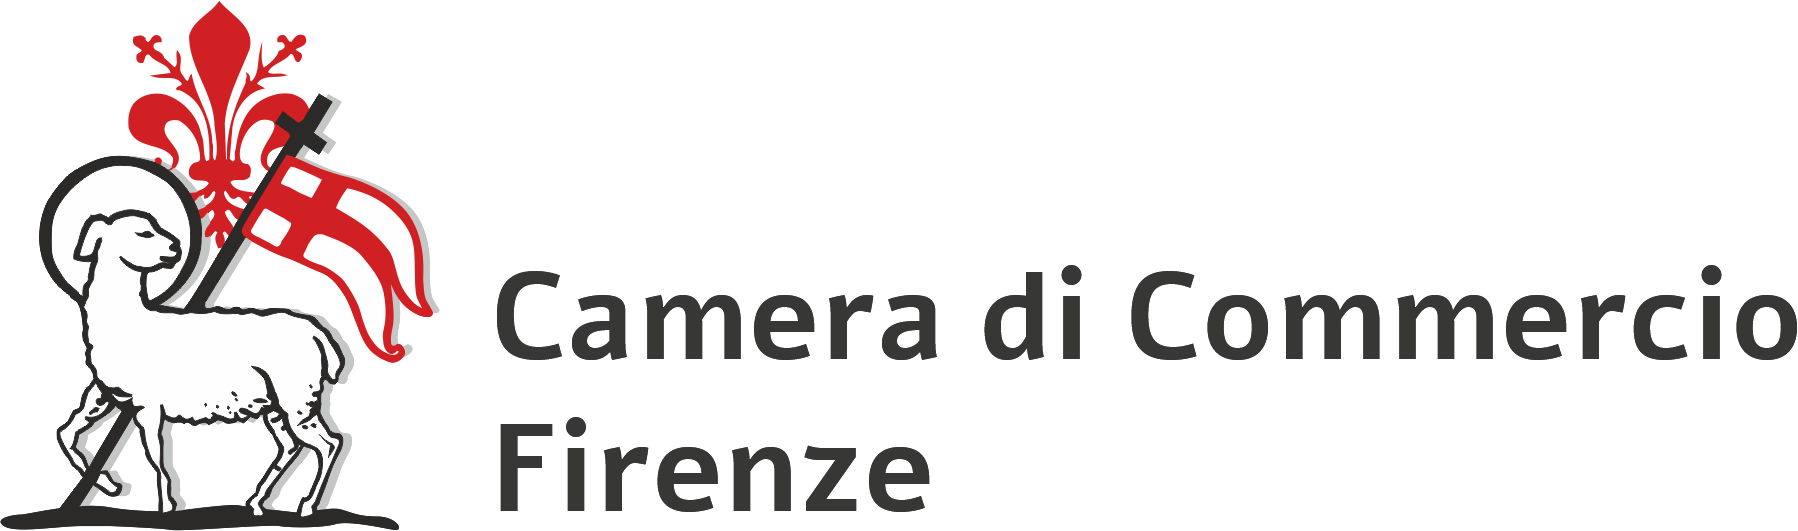 logo della Camera di Commercio di Firenze